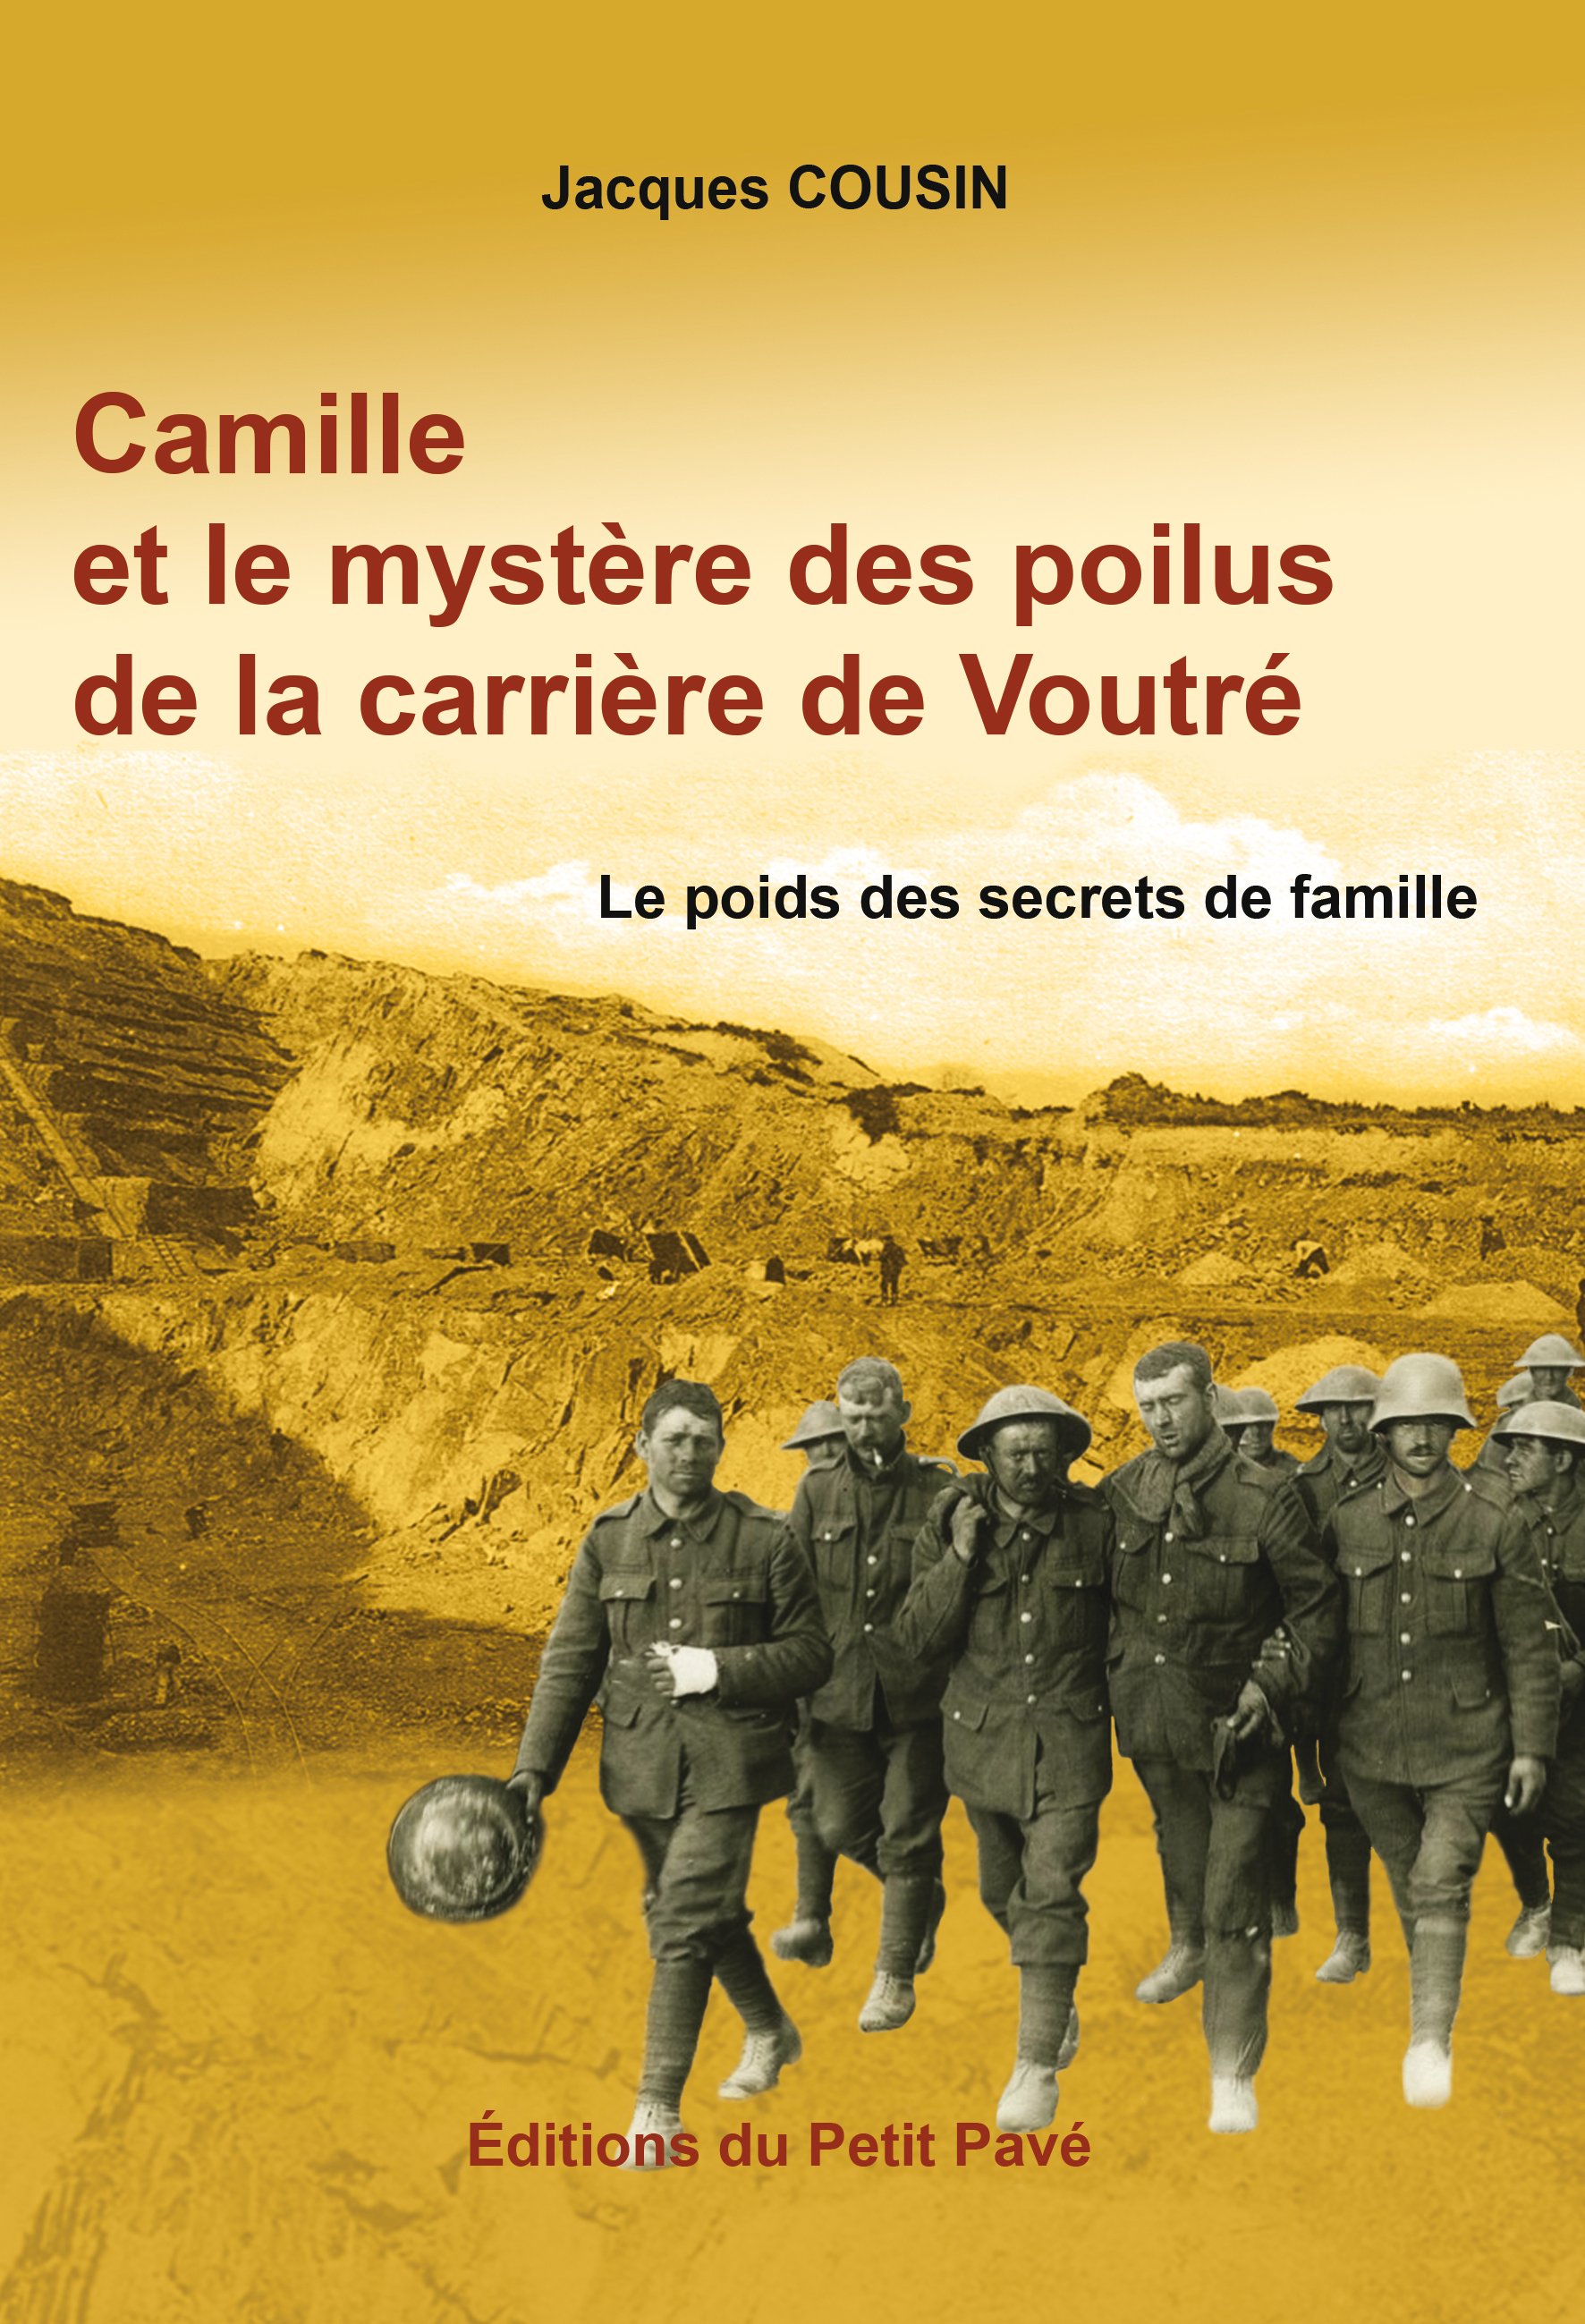 Camille et le mystère des poilus de la carrière de Voutré - Photo camille_0.jpg